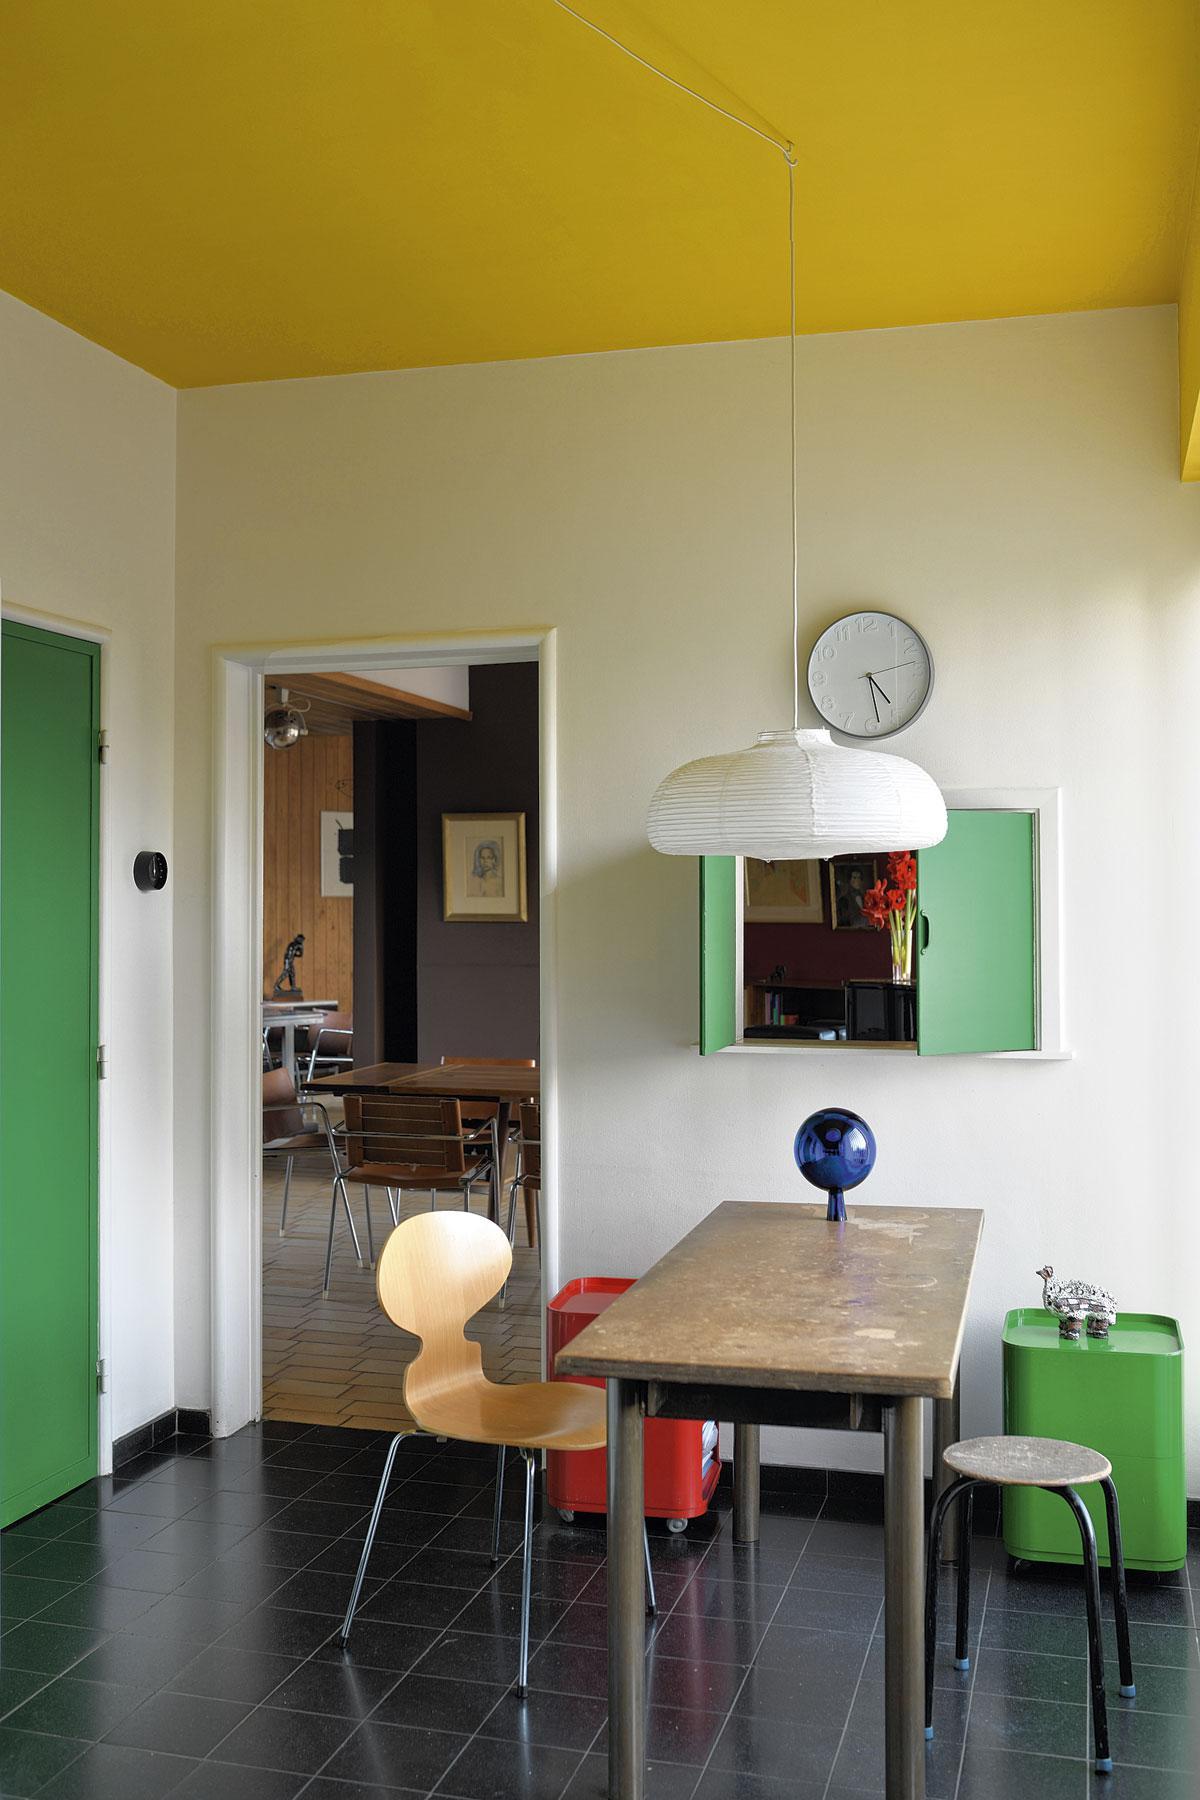 Dans la cuisine, la couleur verte de la porte et du passe-plat apporte de la gaieté.